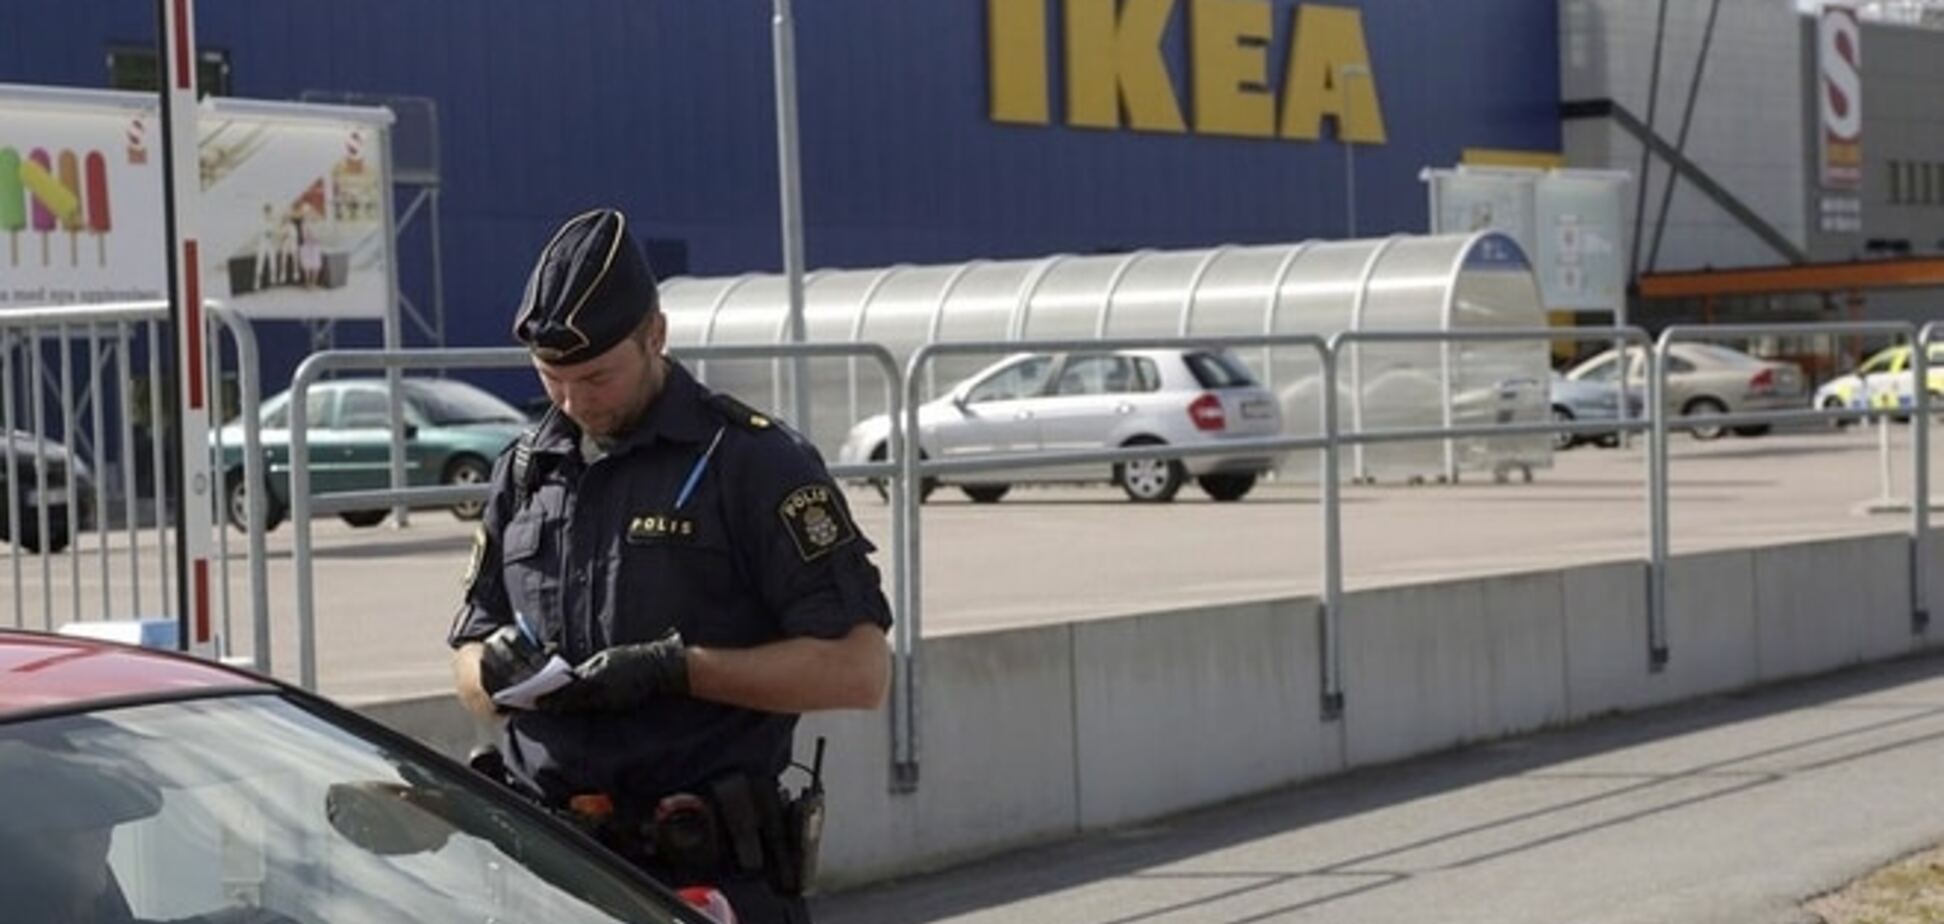 Різанина 'по-шведськи': мігранти влаштували розбій в IKEA. Опубліковані фото